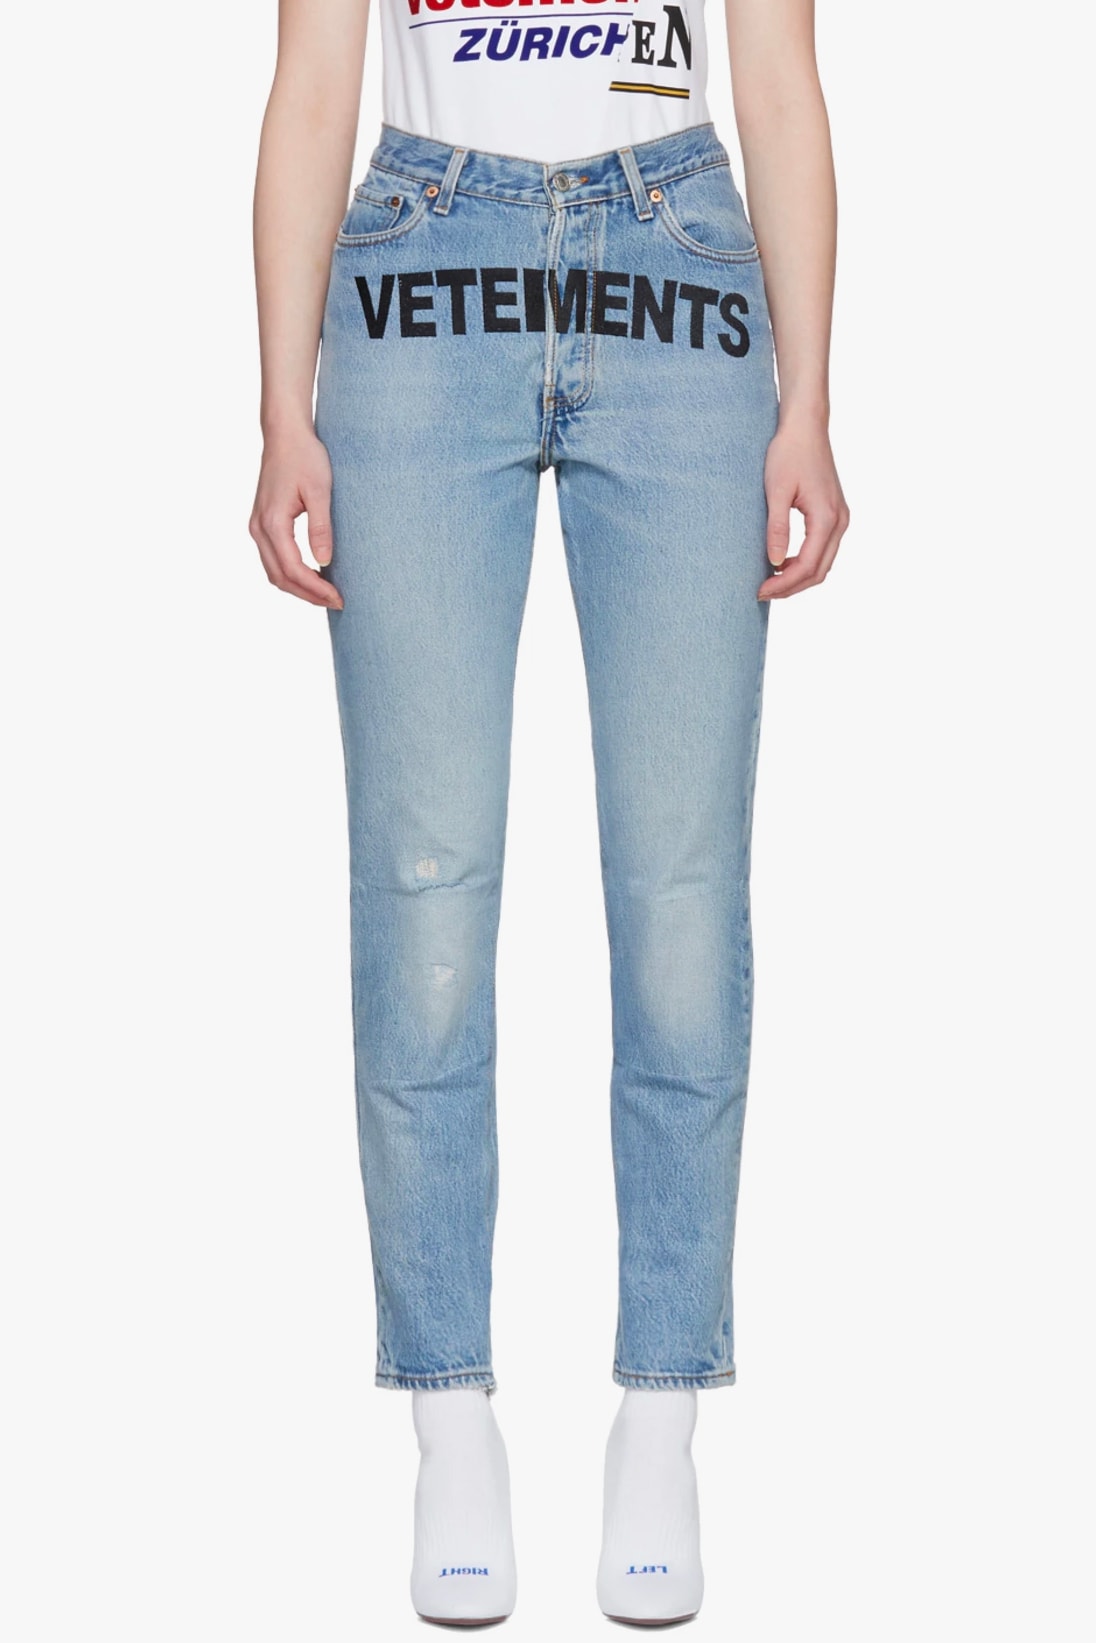 Vetements Levi's Jeans Denim SSENSE Sale